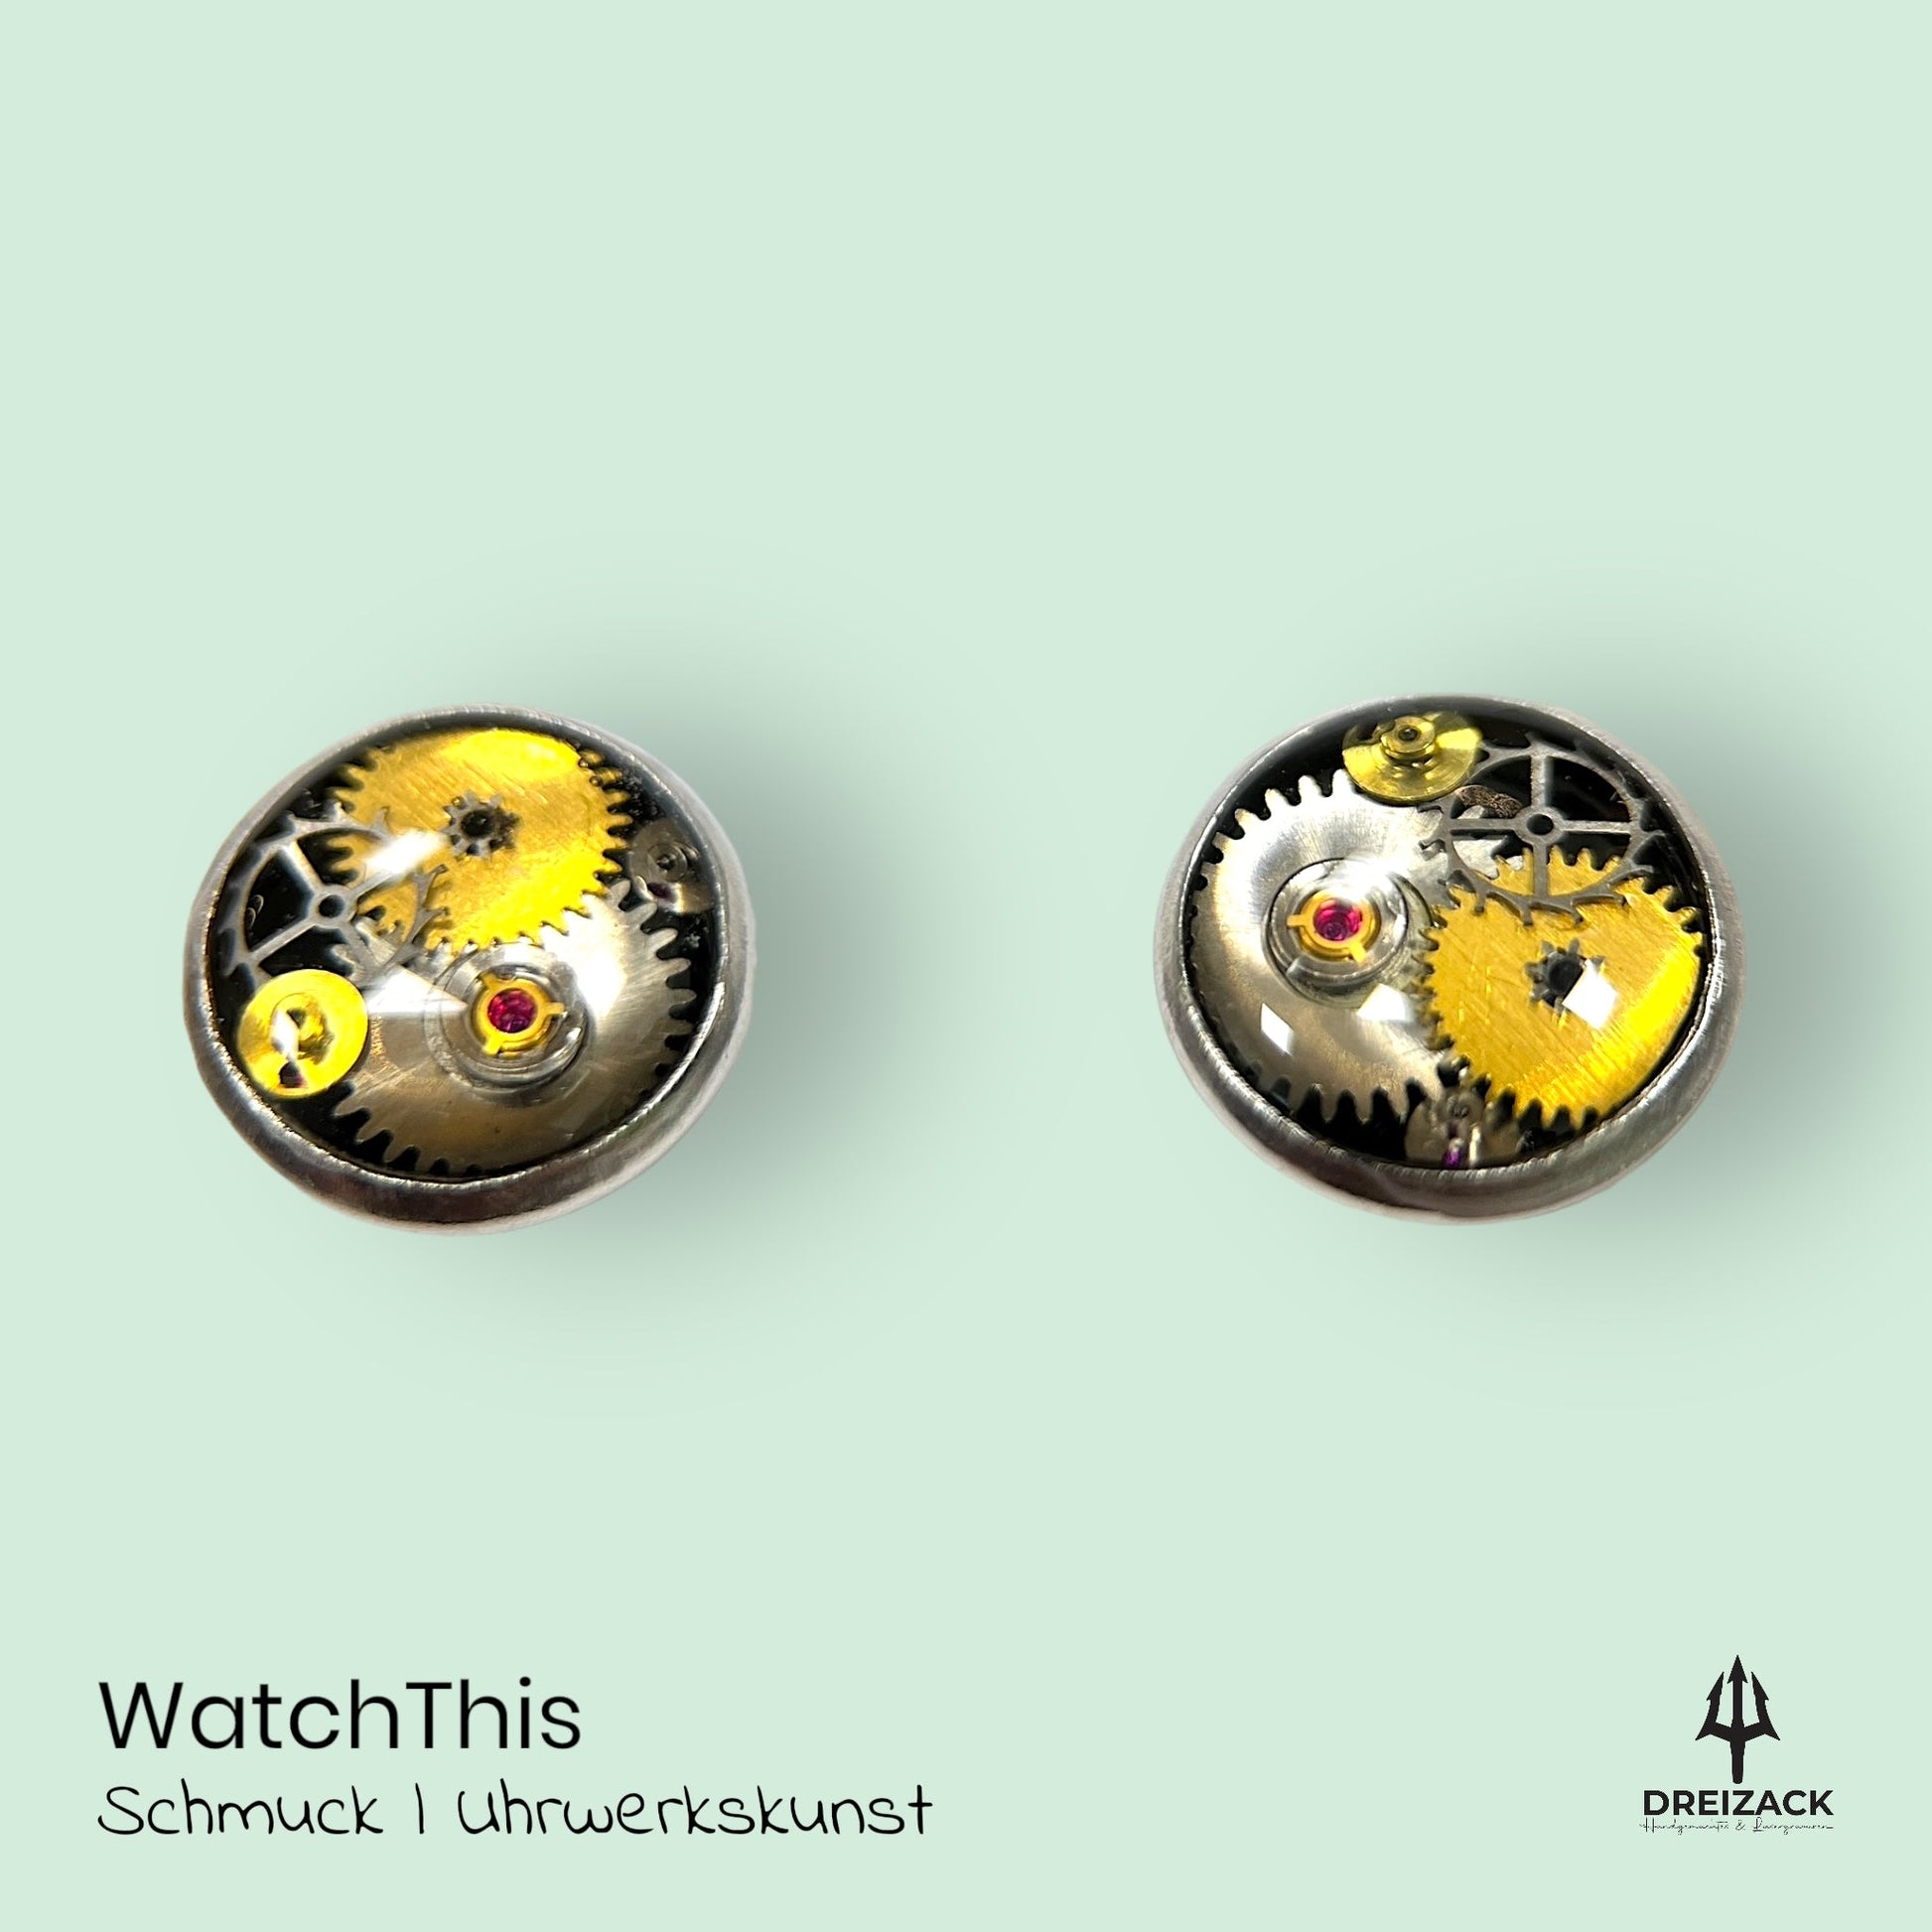 Ohrstecker von WatchThis - Zeitlose Eleganz aus Uhrwerken 8mm | Andromeda Schmuck WatchThis oesterreich handgemachte geschenke in wien